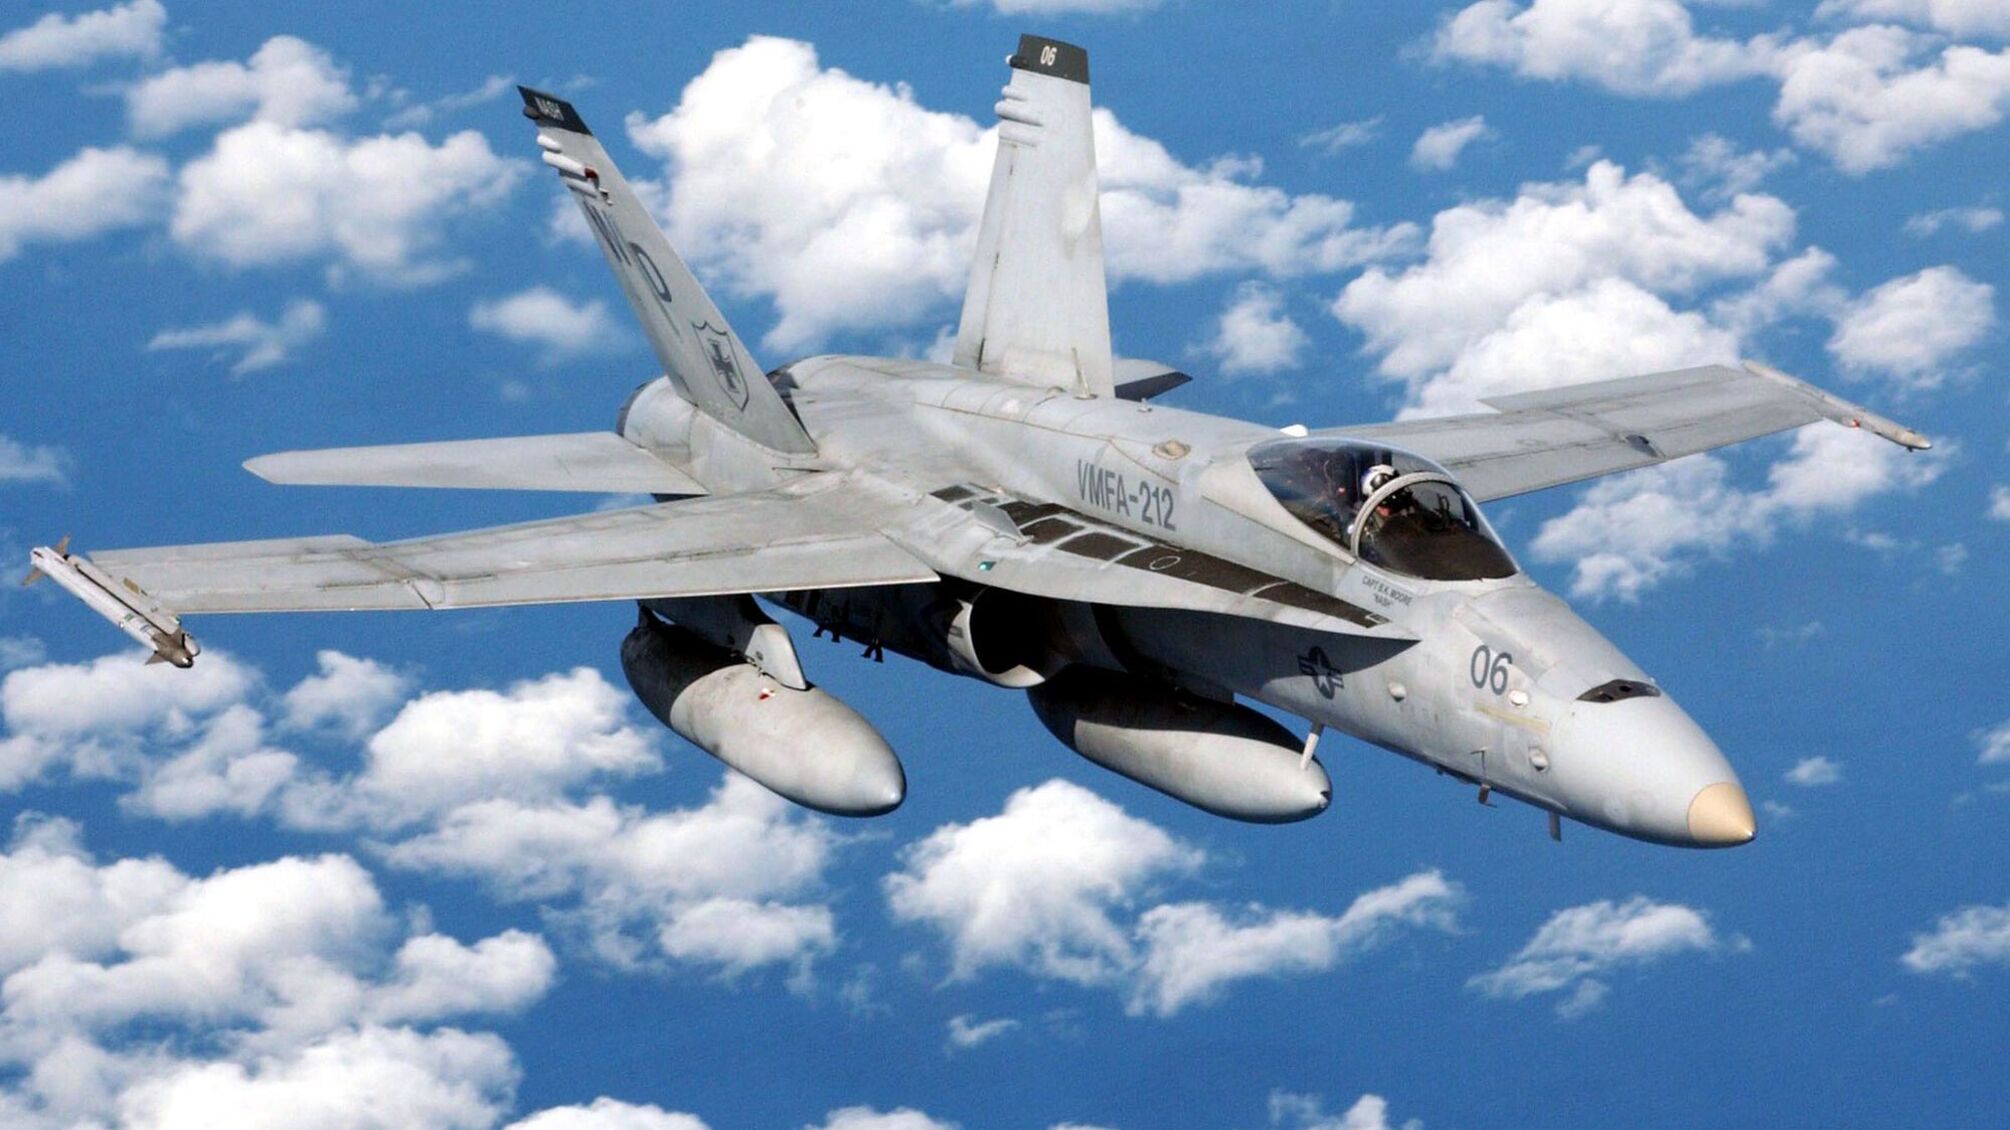 Австралія може передати Україні списані винищувачі F/A-18 Hornet, – ЗМІ